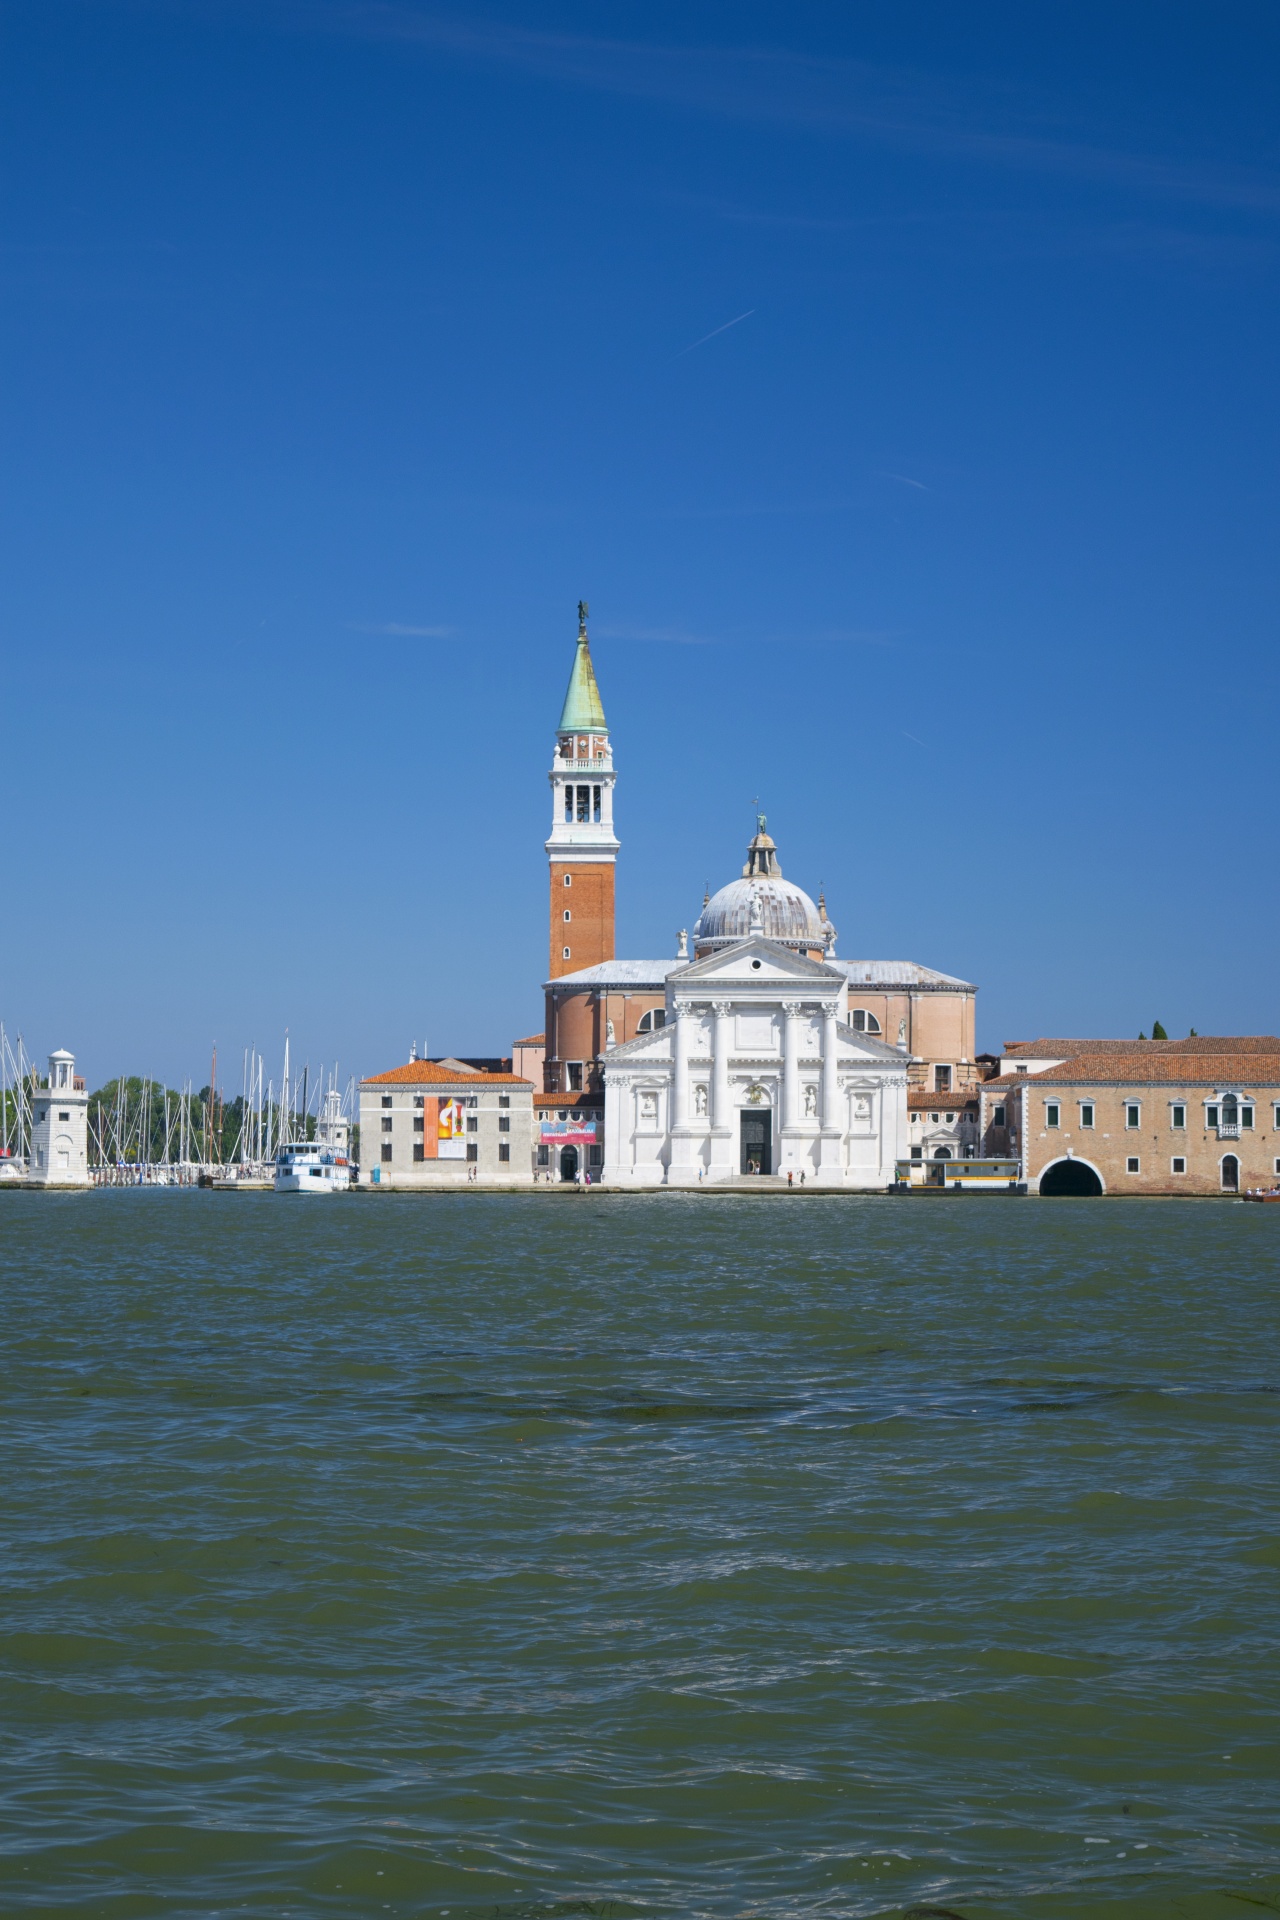 Venice Image 1744